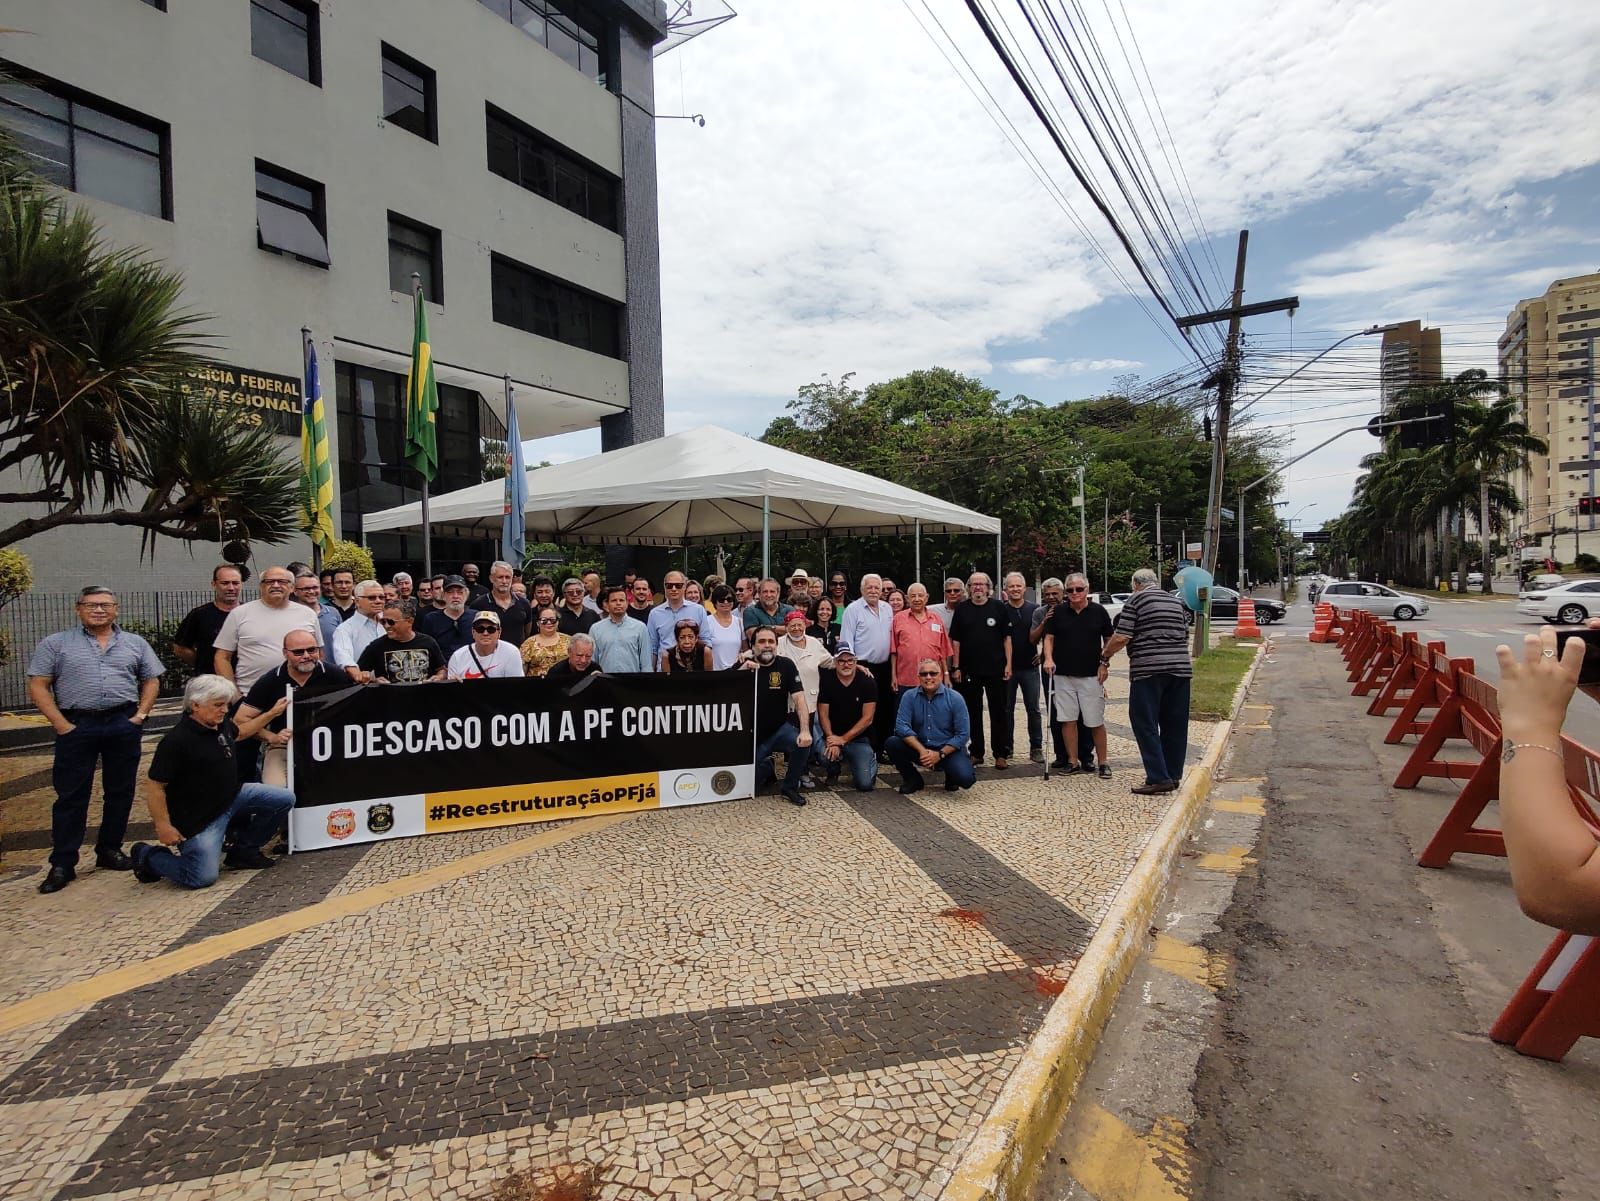 Polícia Federal faz mobilização em todo o Brasil nesta quinta-feira, 26